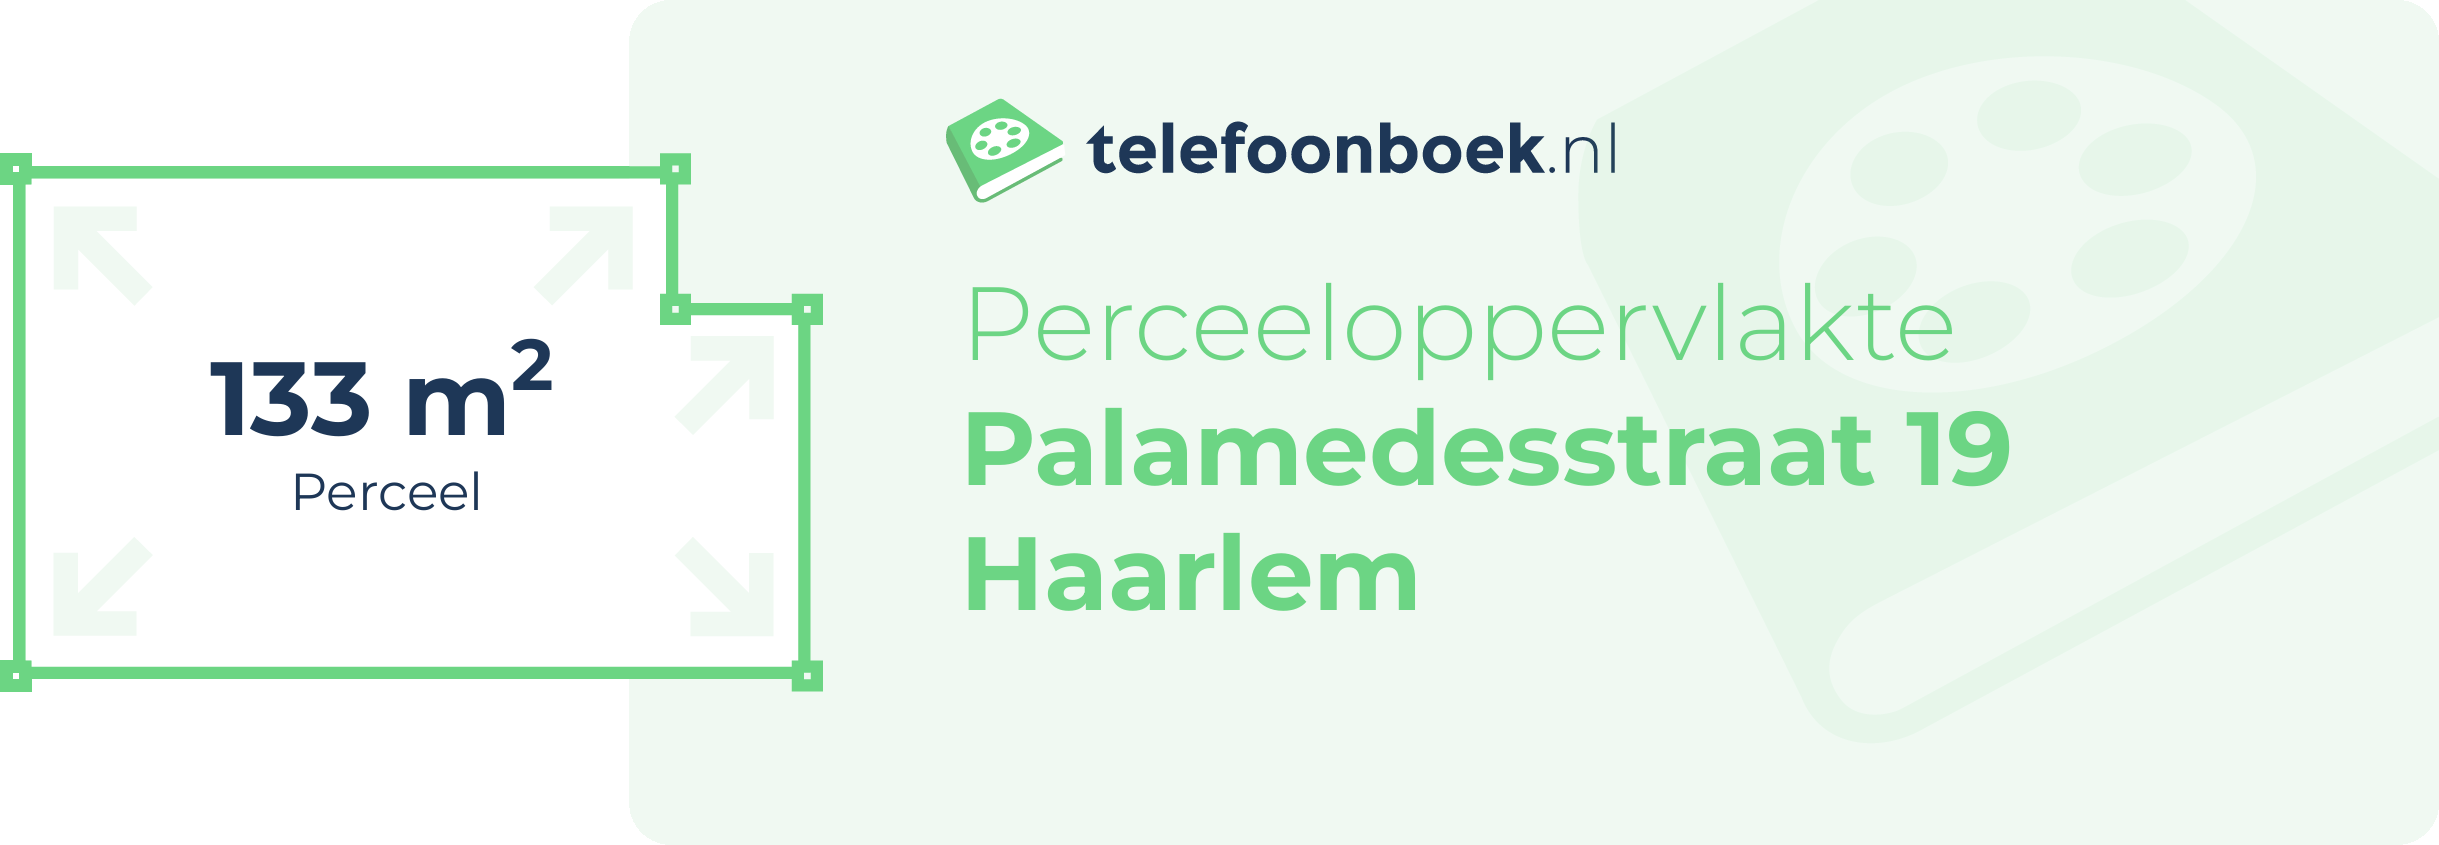 Perceeloppervlakte Palamedesstraat 19 Haarlem